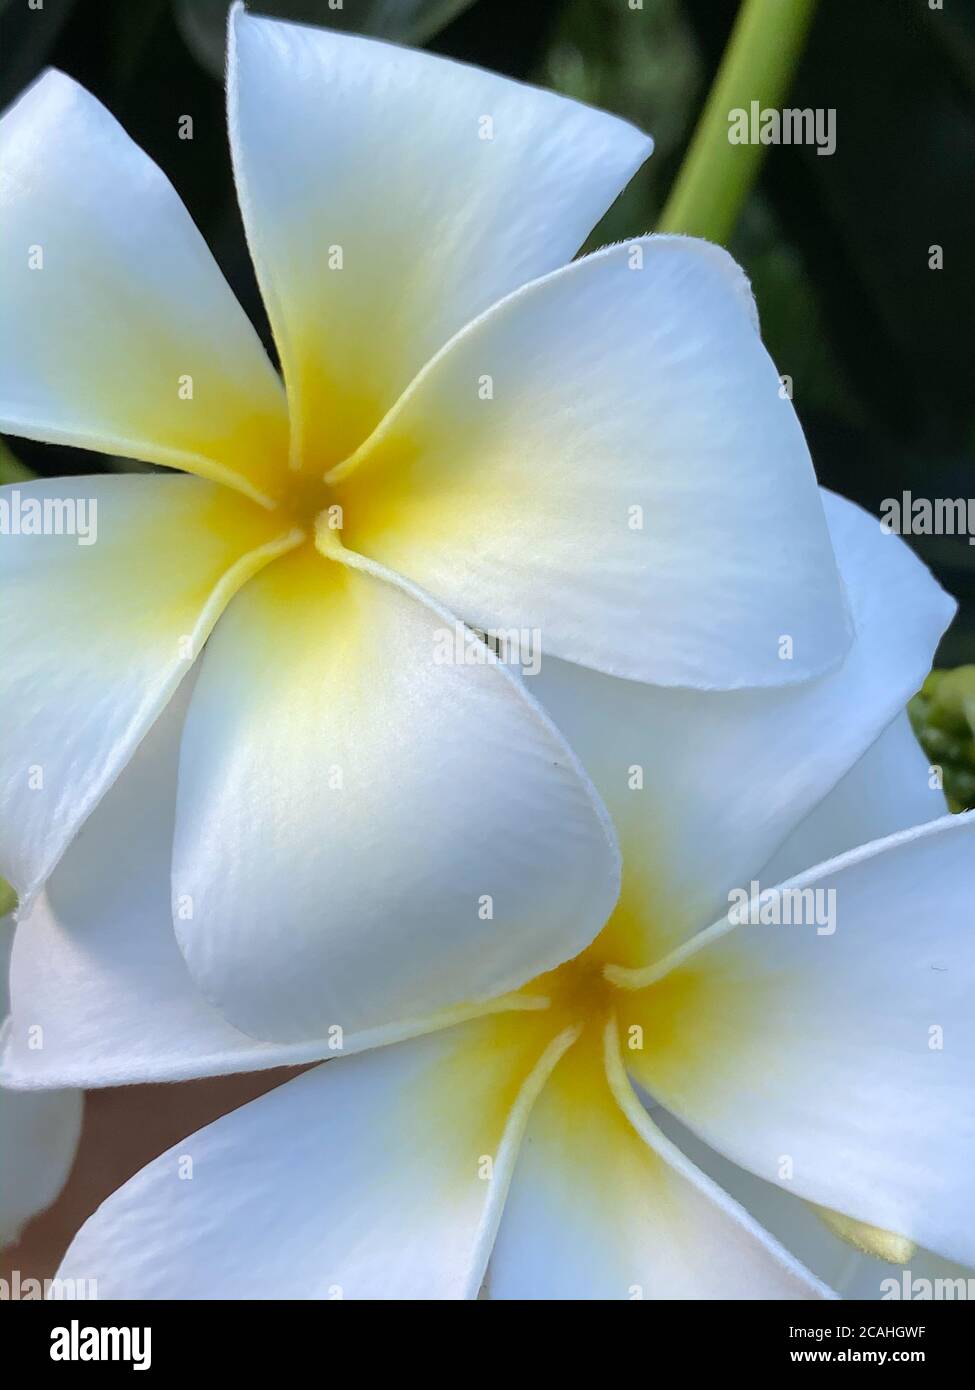 Una fotografía de primer plano de una flor tropical frangipani blanca, flores fragantes para crear un ambiente de relajación y placer. Foto en un bac natural Foto de stock